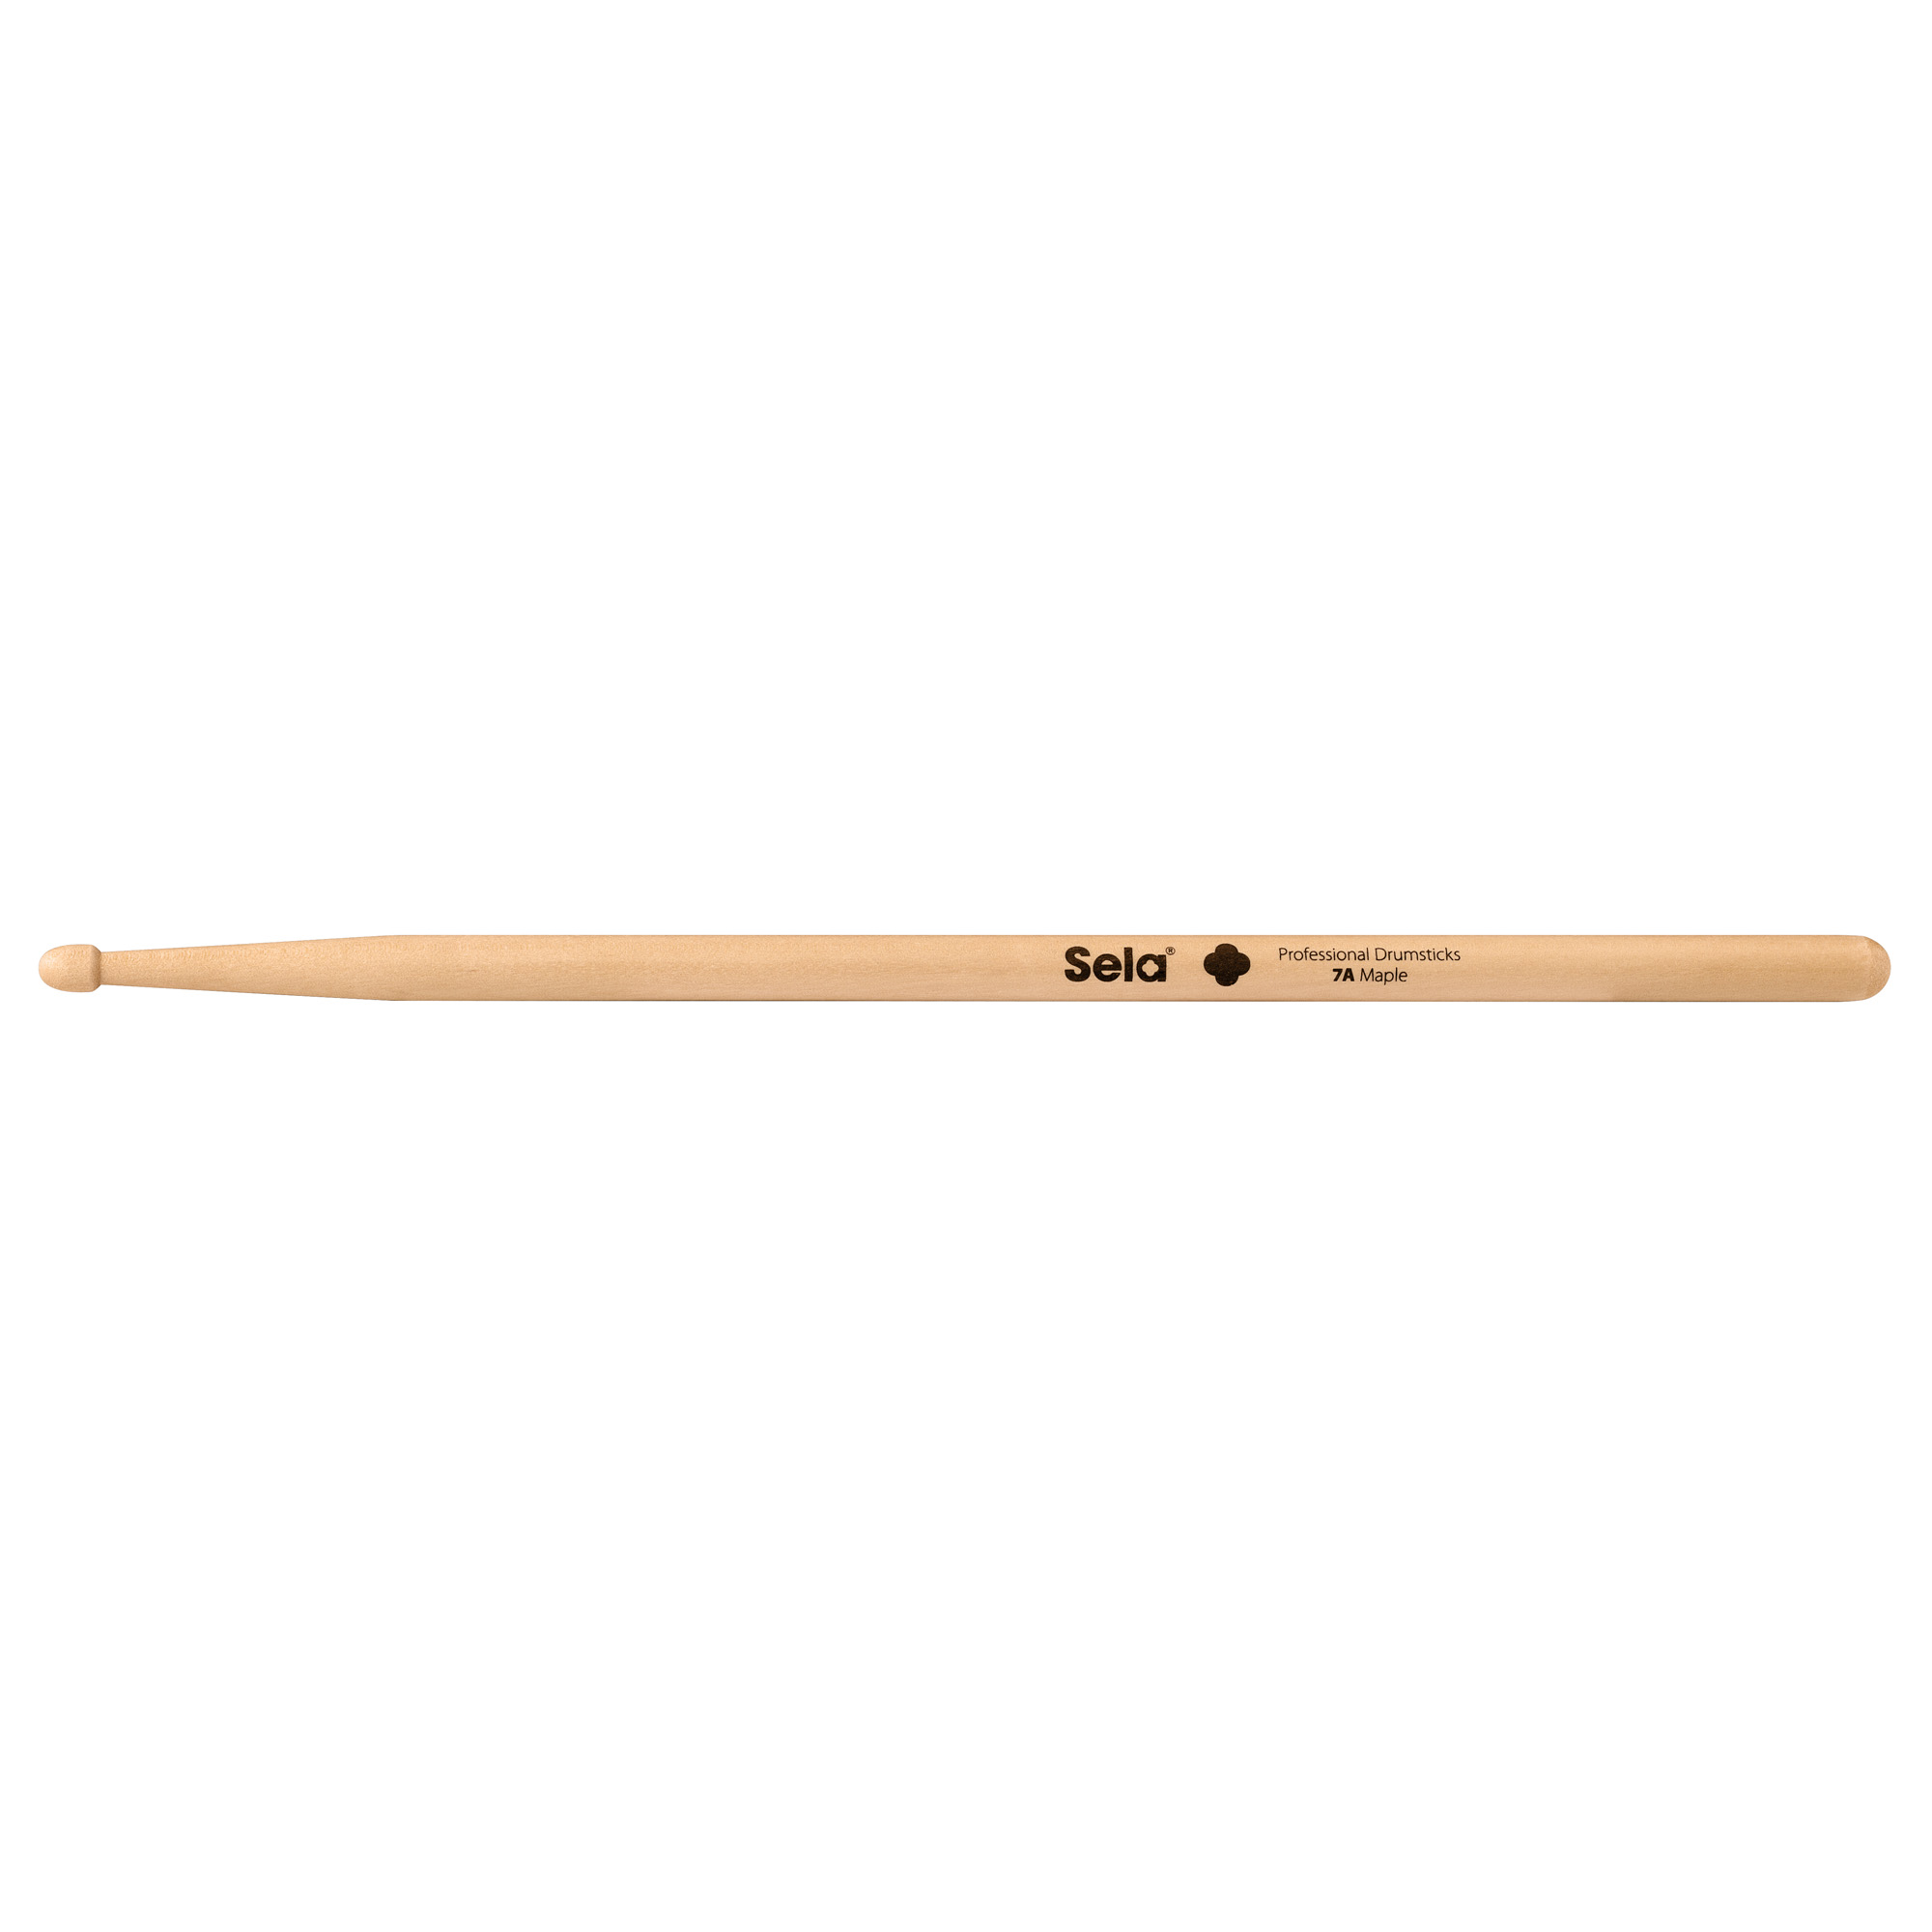 Professional Drumsticks 7A Maple Bilder 2